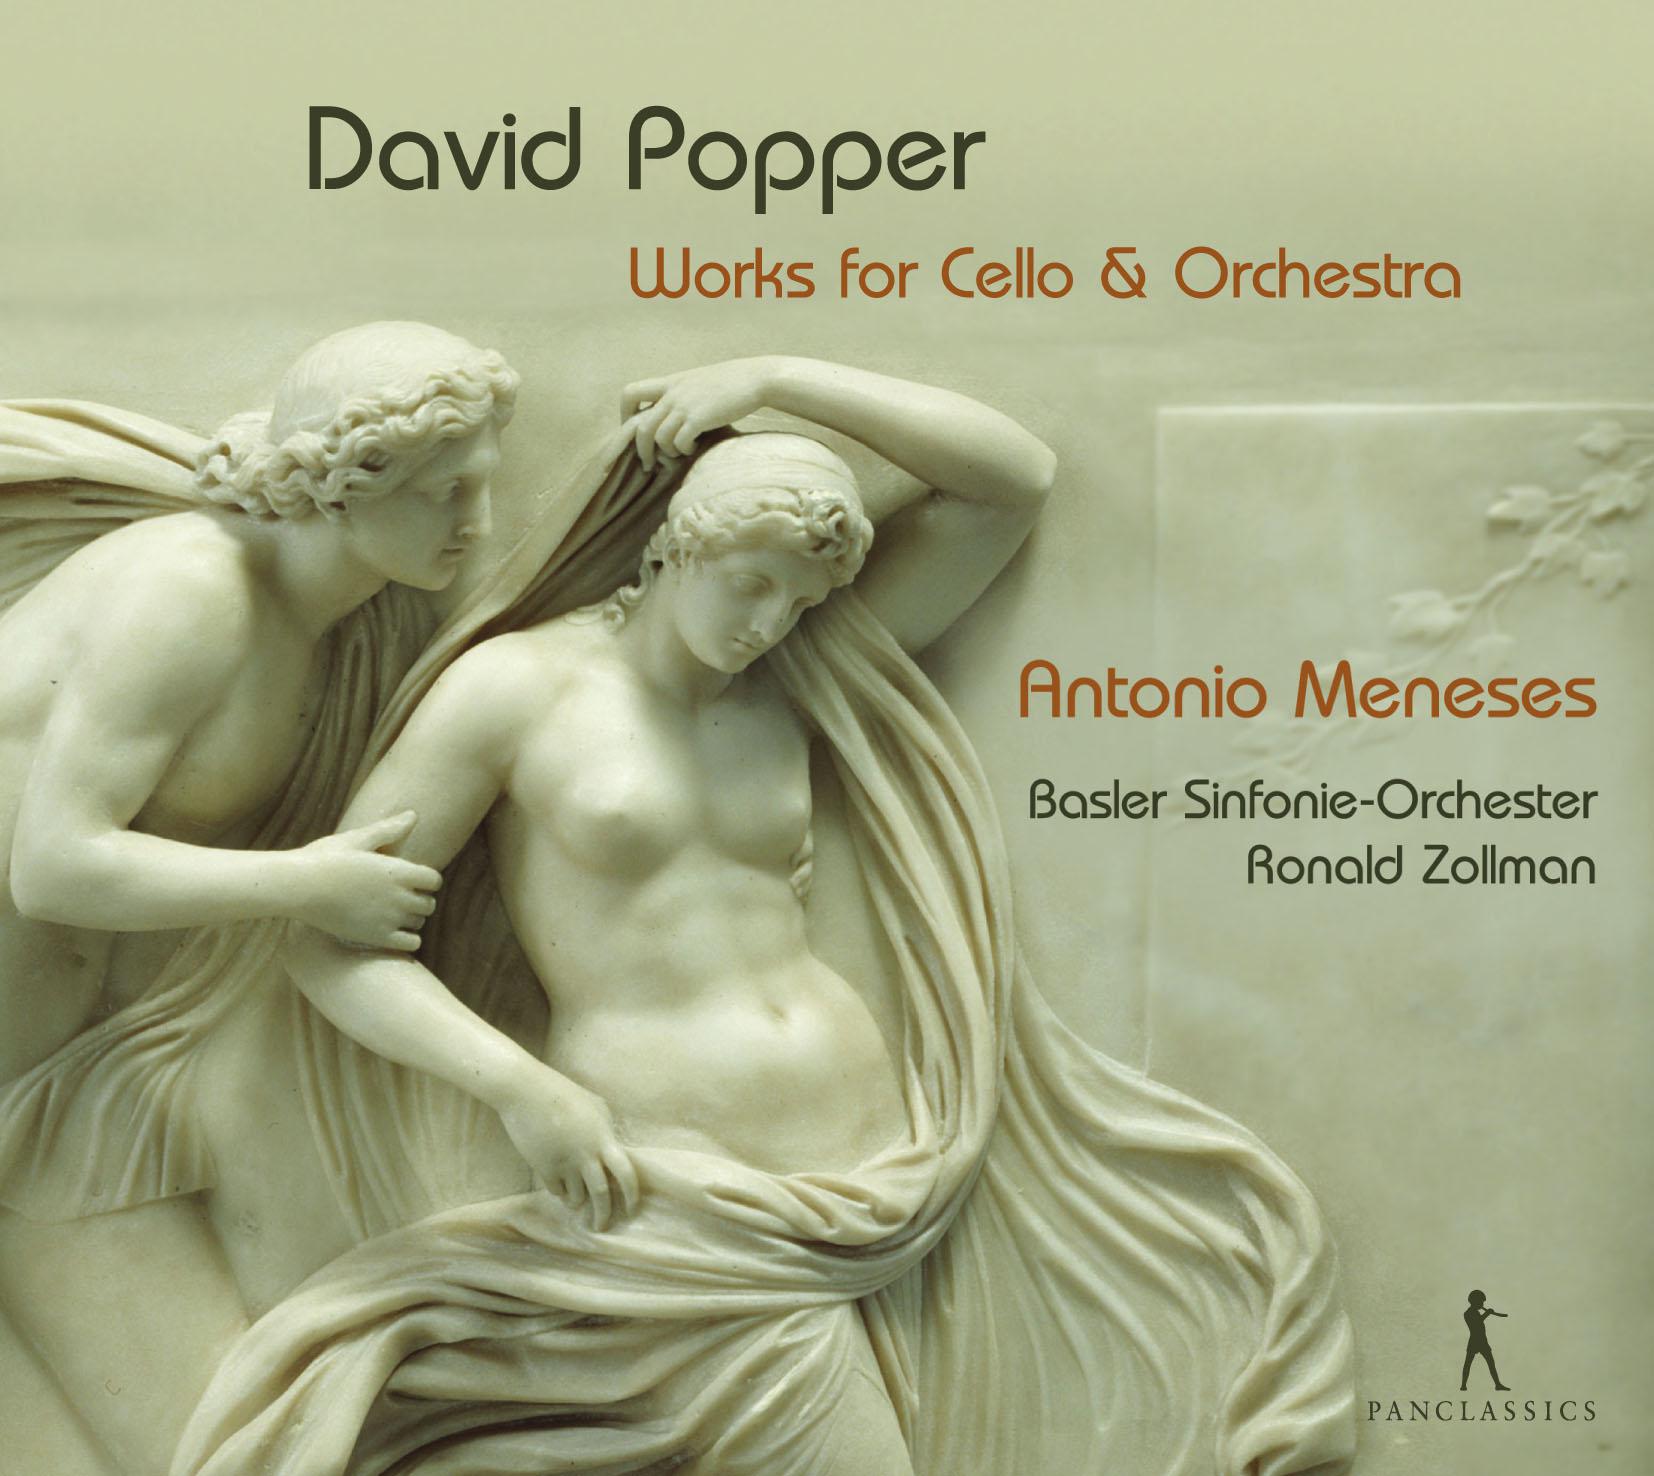 Cello Concerto No. 2 in E Minor, Op. 24: I. Allegro moderato